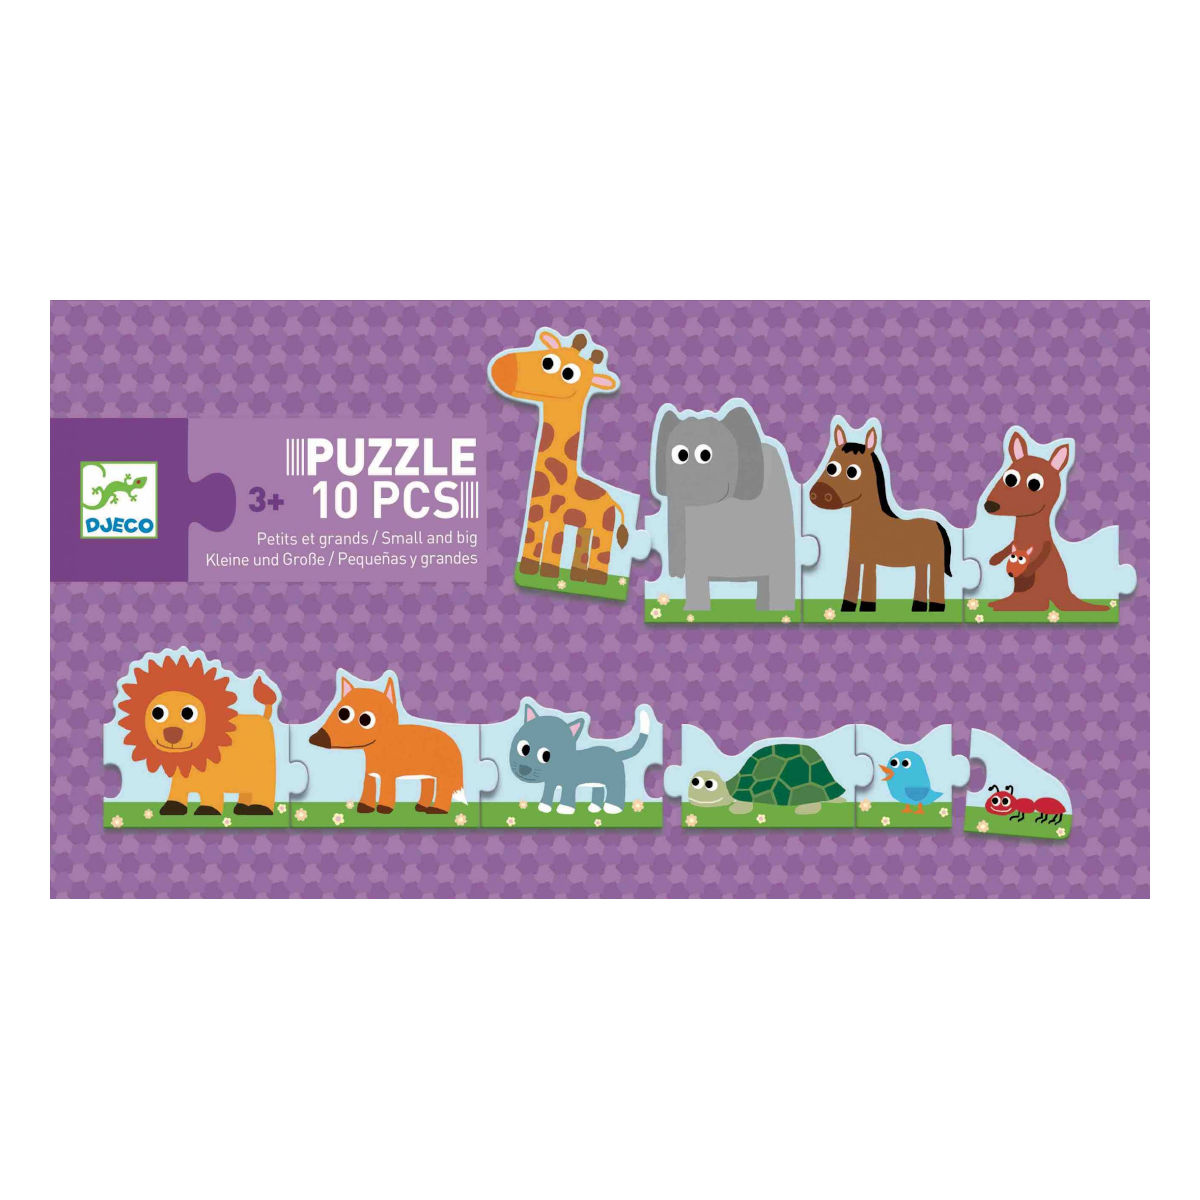 Puzzle Petits et Grandes - Puzzle 10 Pezzi - Djeco